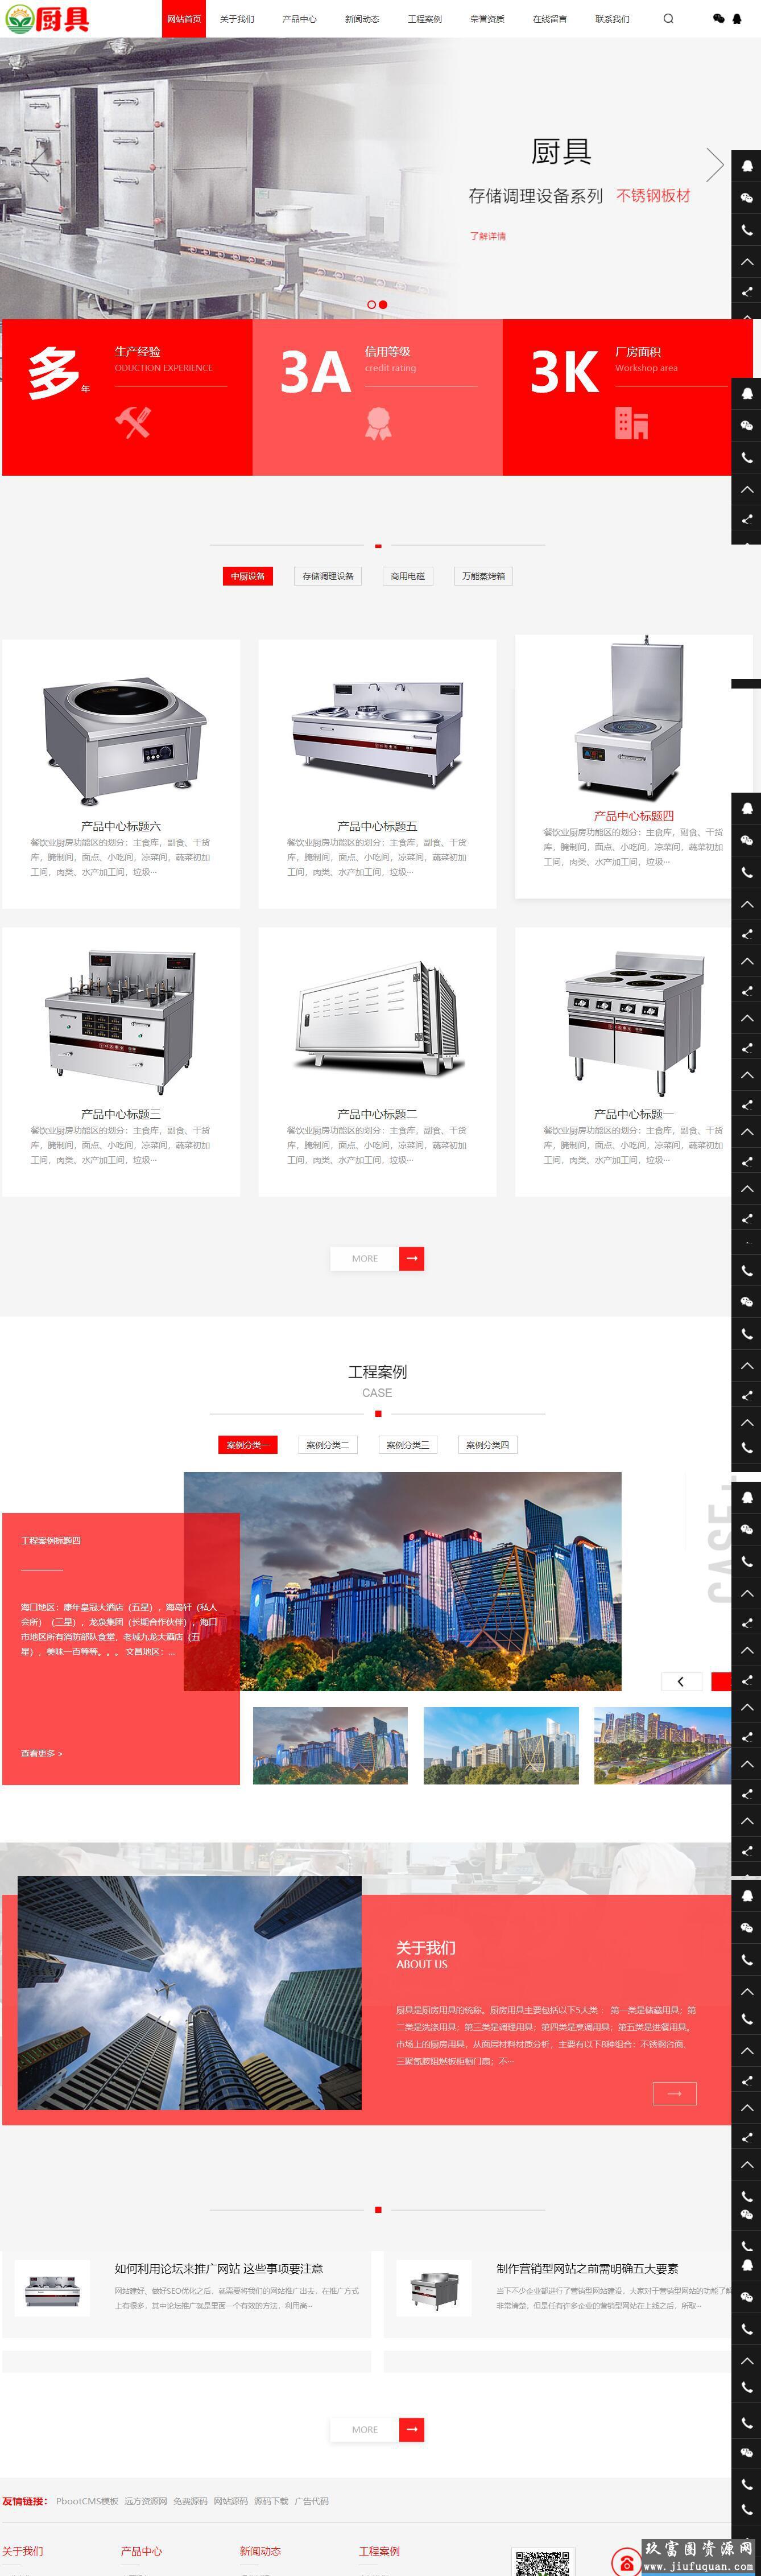 红色厨具设备网站pbootcms模板 厨房用品网站源码下载